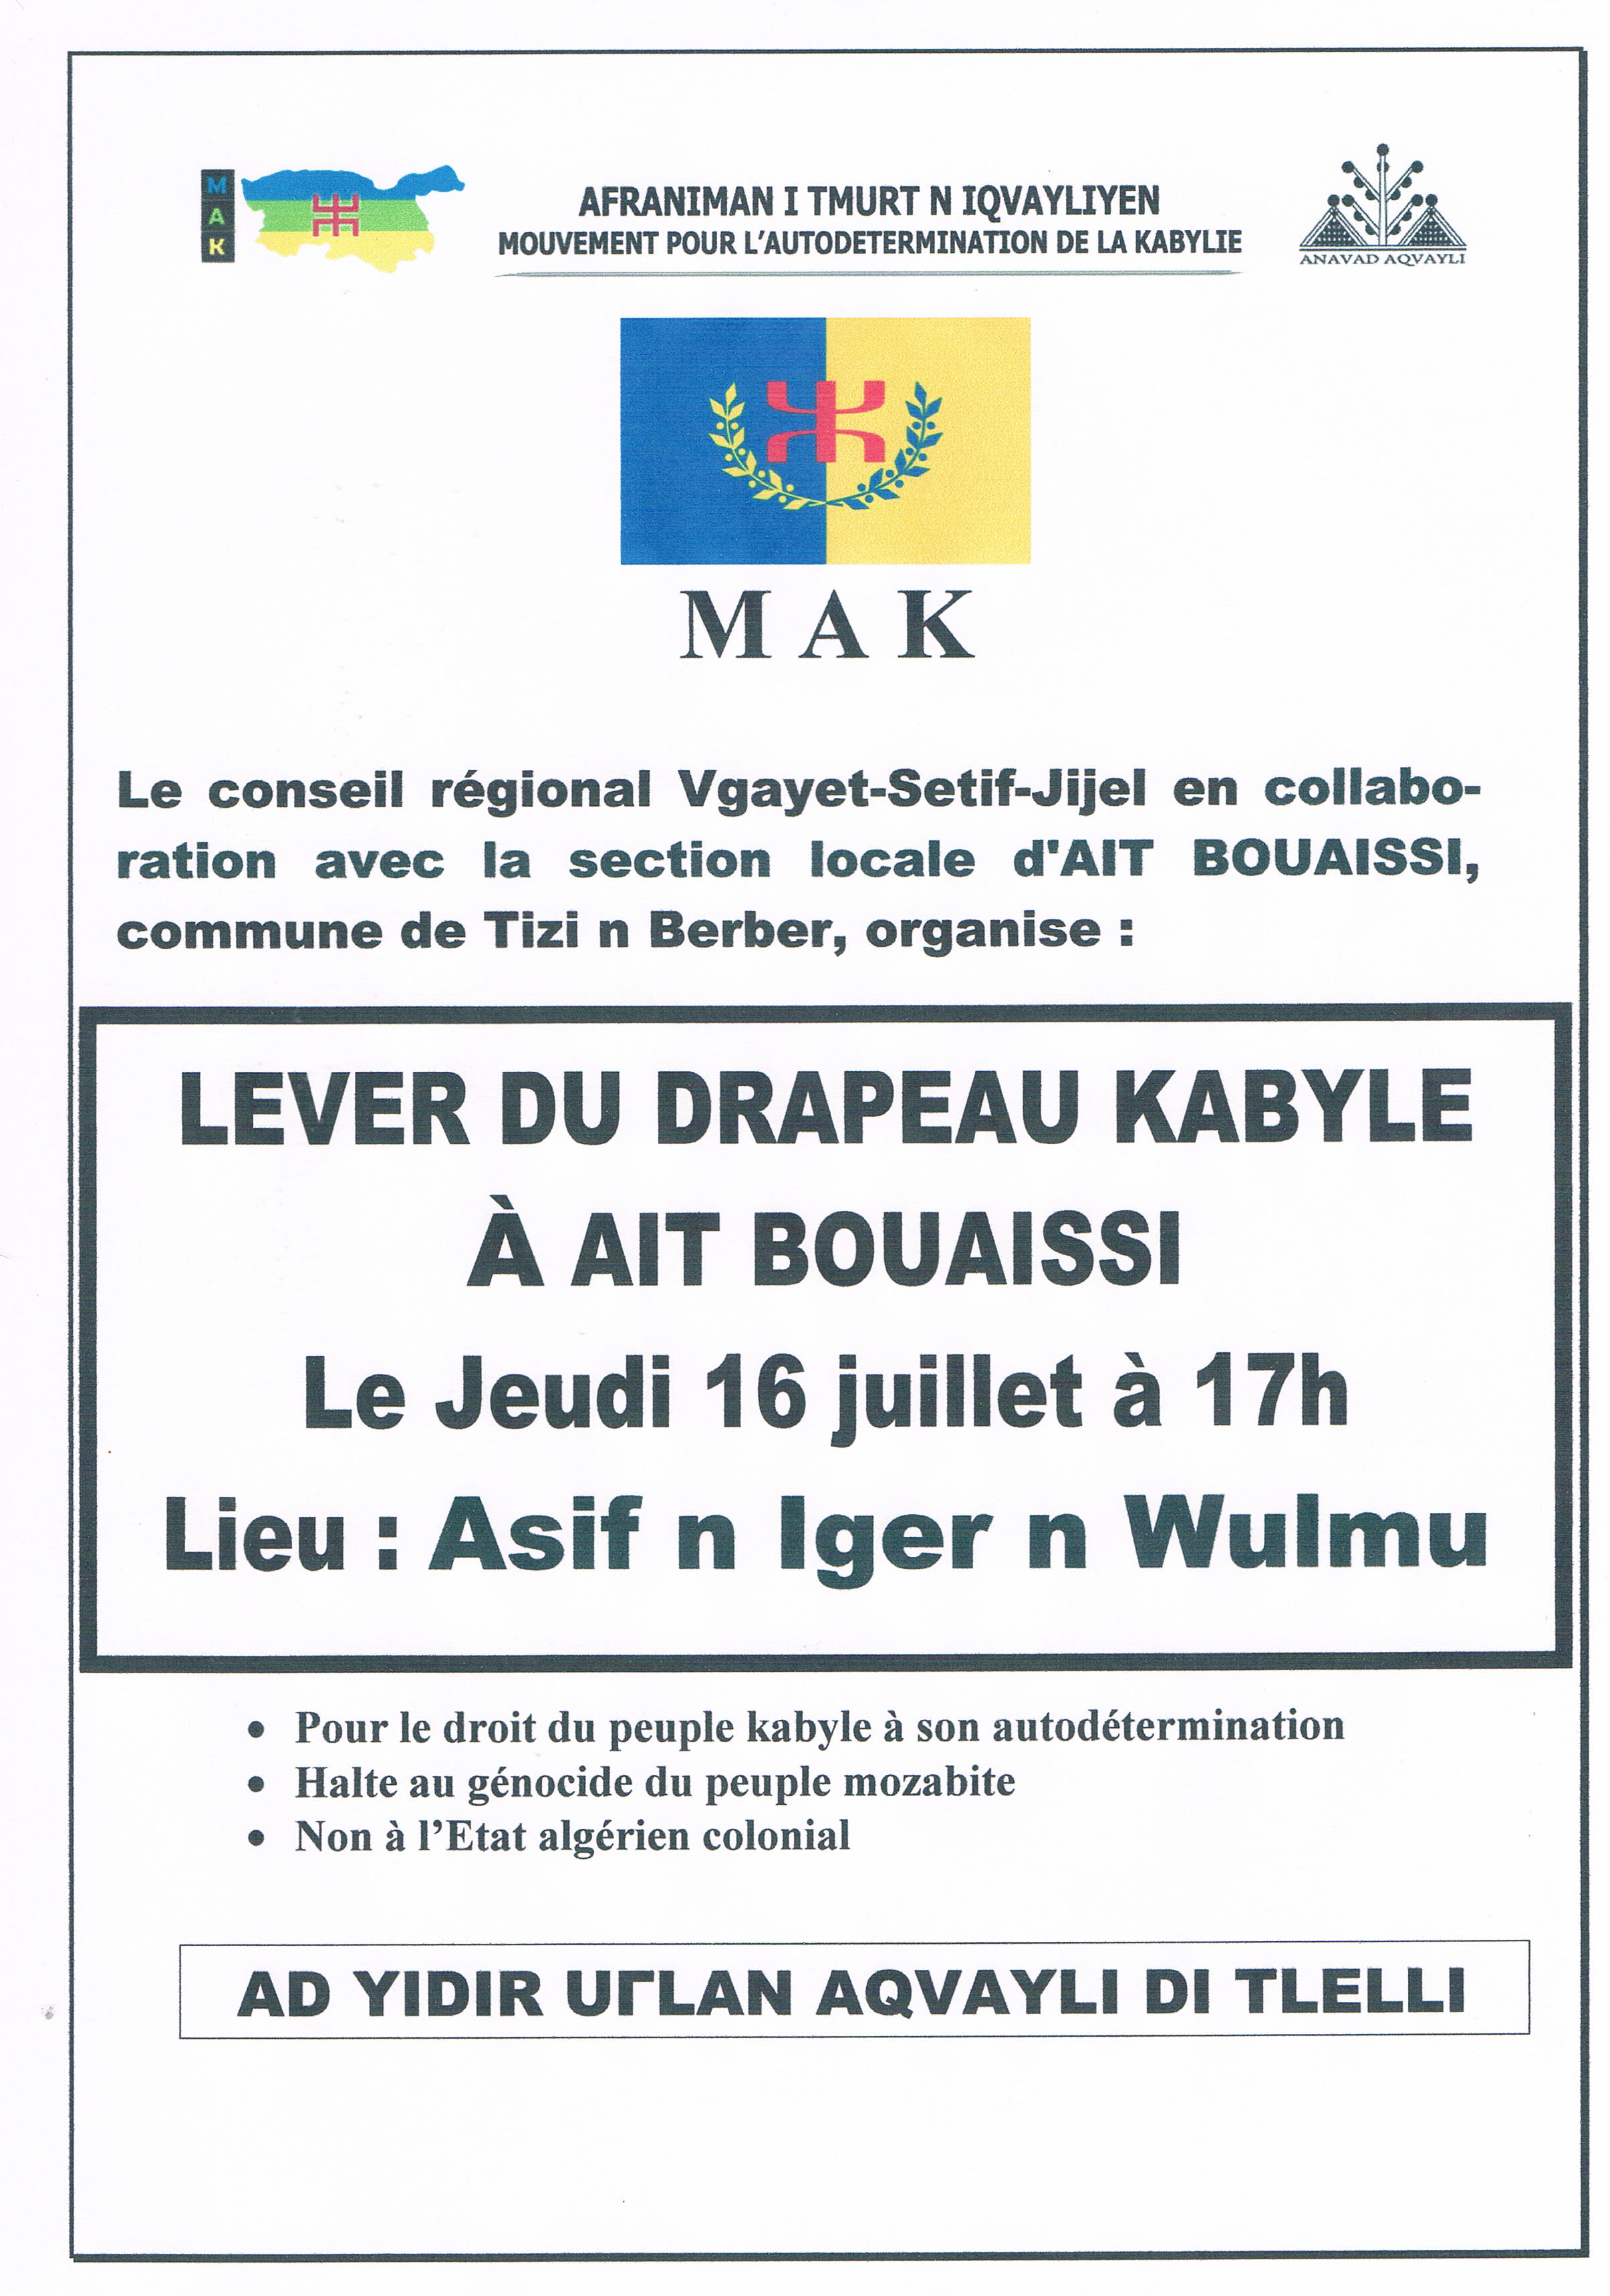 At Bouaissi (Tizi n Berber) : Lever du drapeau kabyle le 16 juillet à 17h